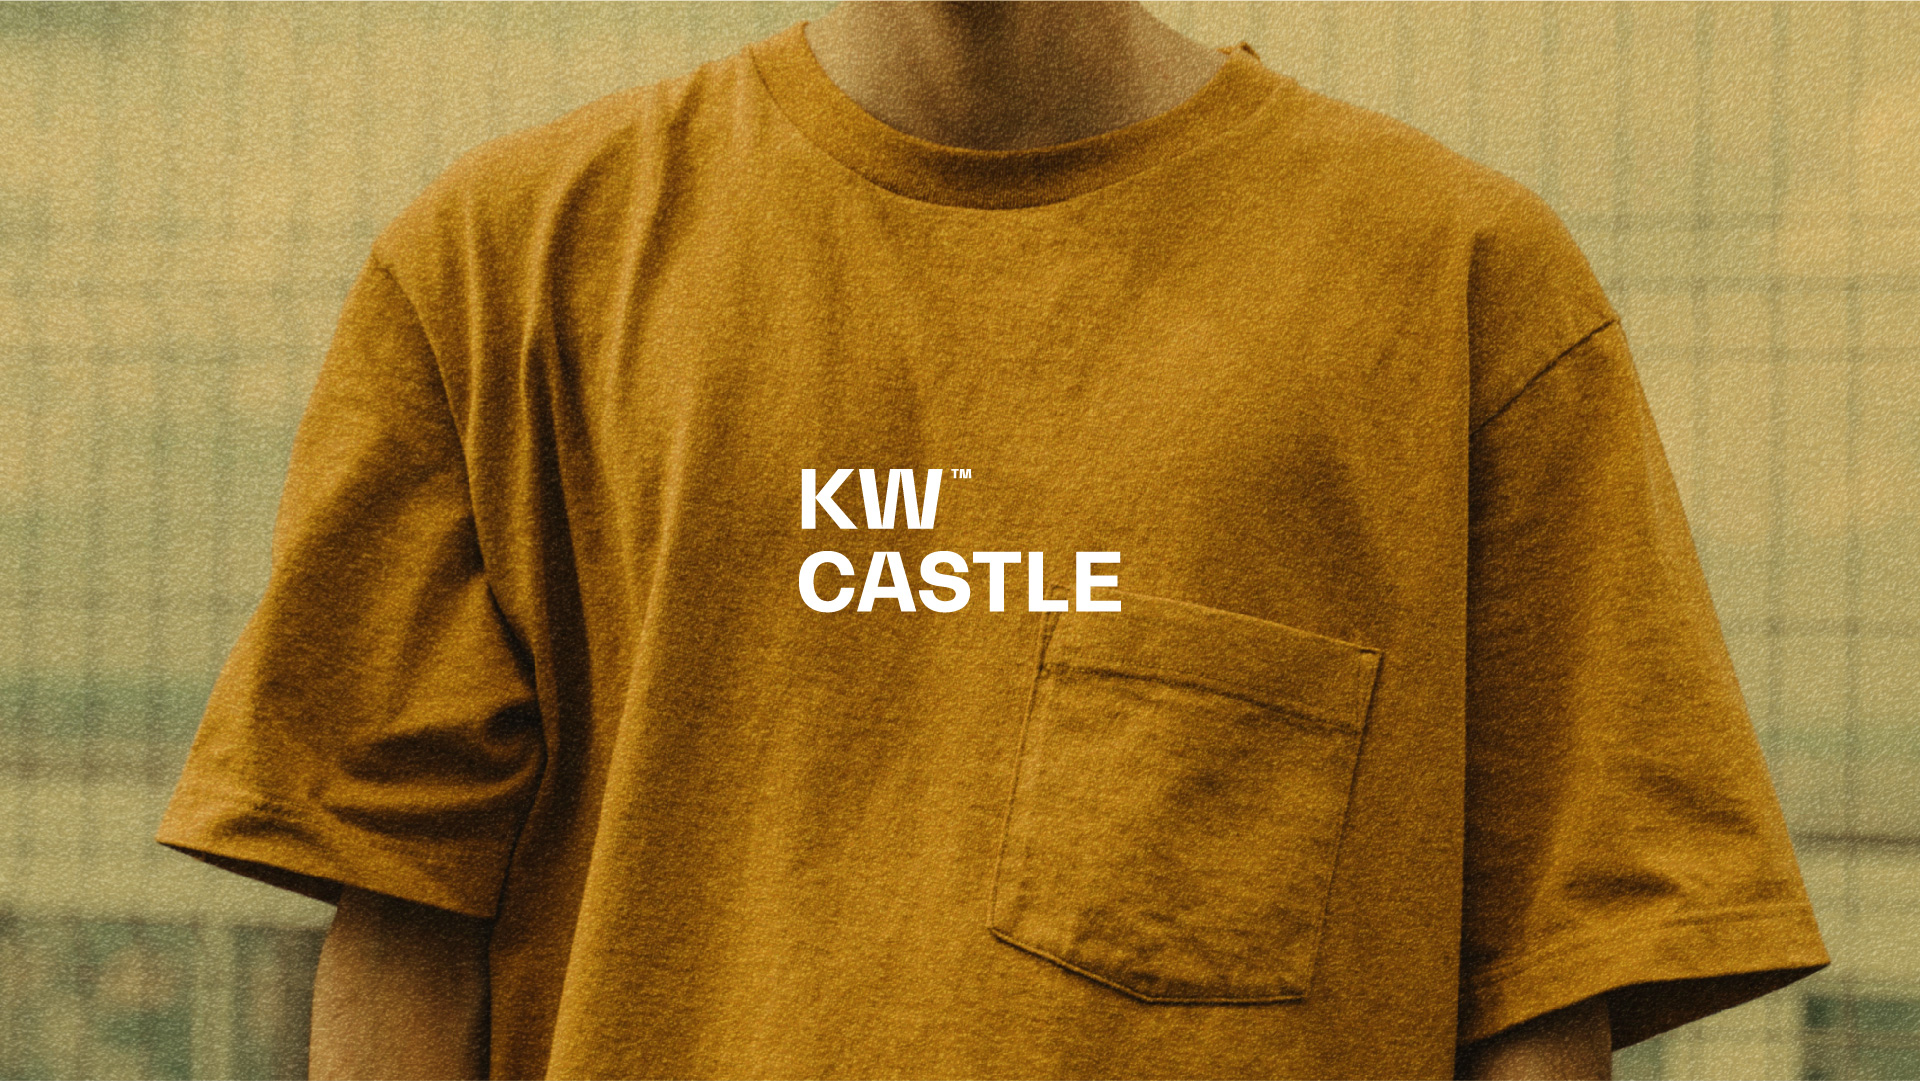 KW Castle Brand Identity Design Created by Khalid El Wakiel